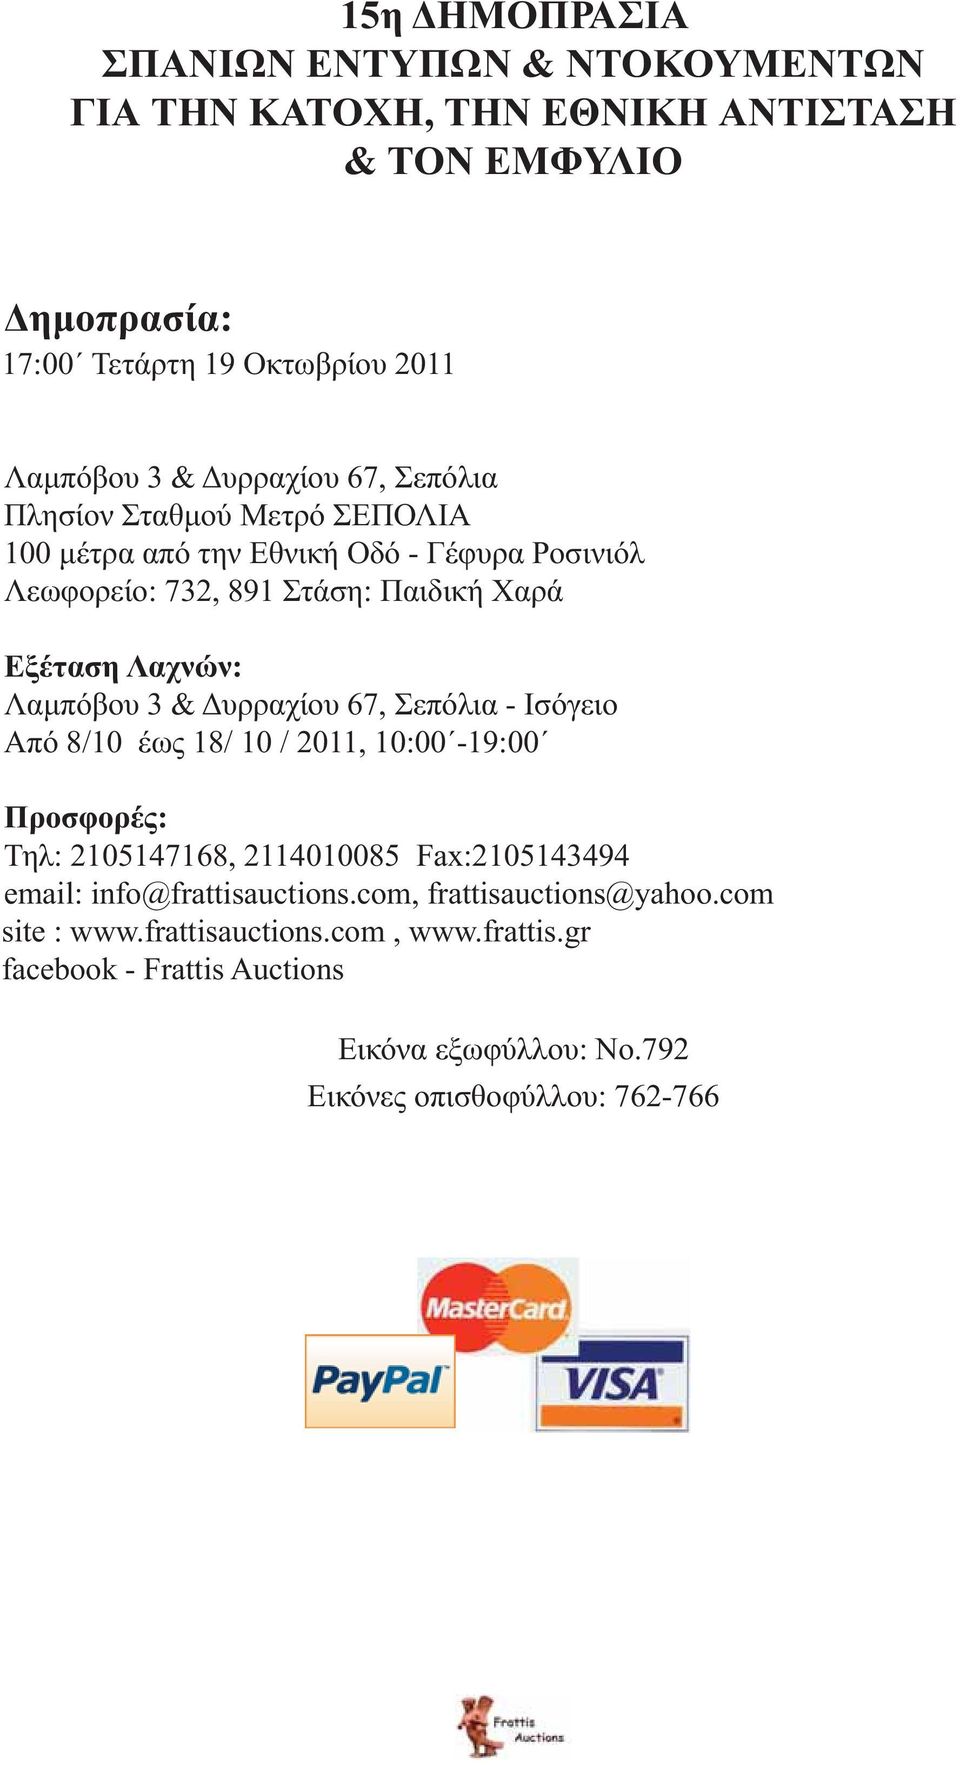 Λαμπόβου 3 & Δυρραχίου 67, Σεπόλια - Ισόγειο Από 8/10 έως 18/ 10 / 2011, 10:00-19:00 Προσφορές: Τηλ: 2105147168, 2114010085 Fax:2105143494 email: